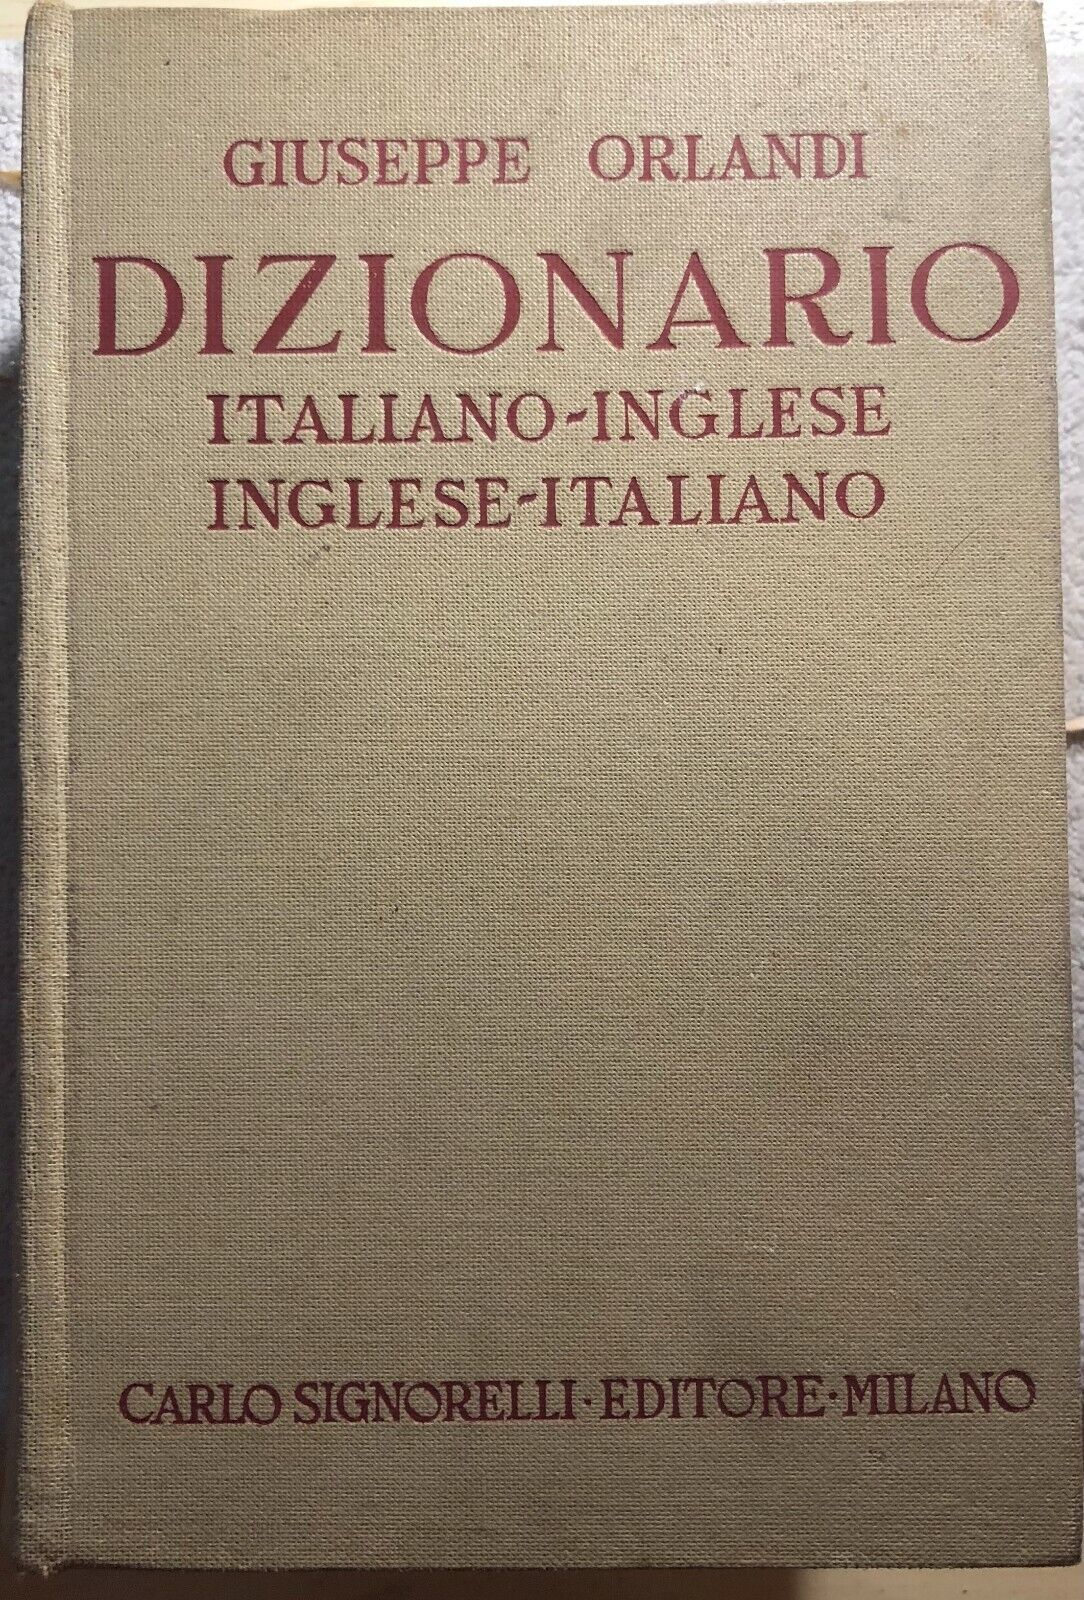 Dizionario Italiano-Inglese Inglese-Italiano di Giuseppe Orlandi,  1971,  Carlo 